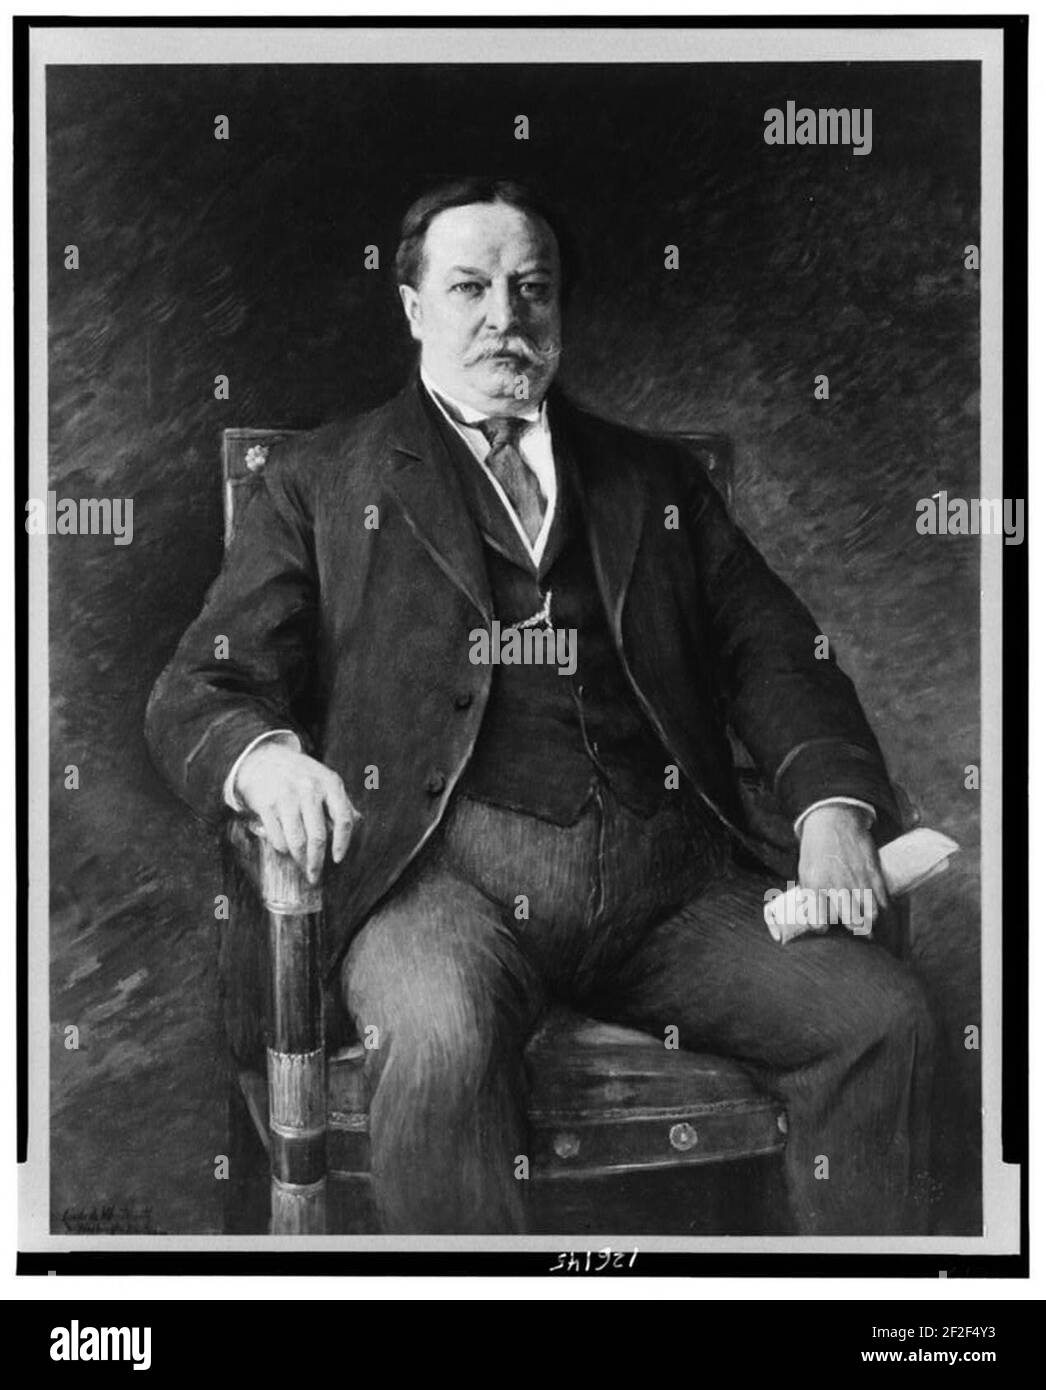 Président William H. Taft, portrait de trois quarts de longueur, assis face à l'avant) - Cécile de Wentworth, Washington, D.C Banque D'Images